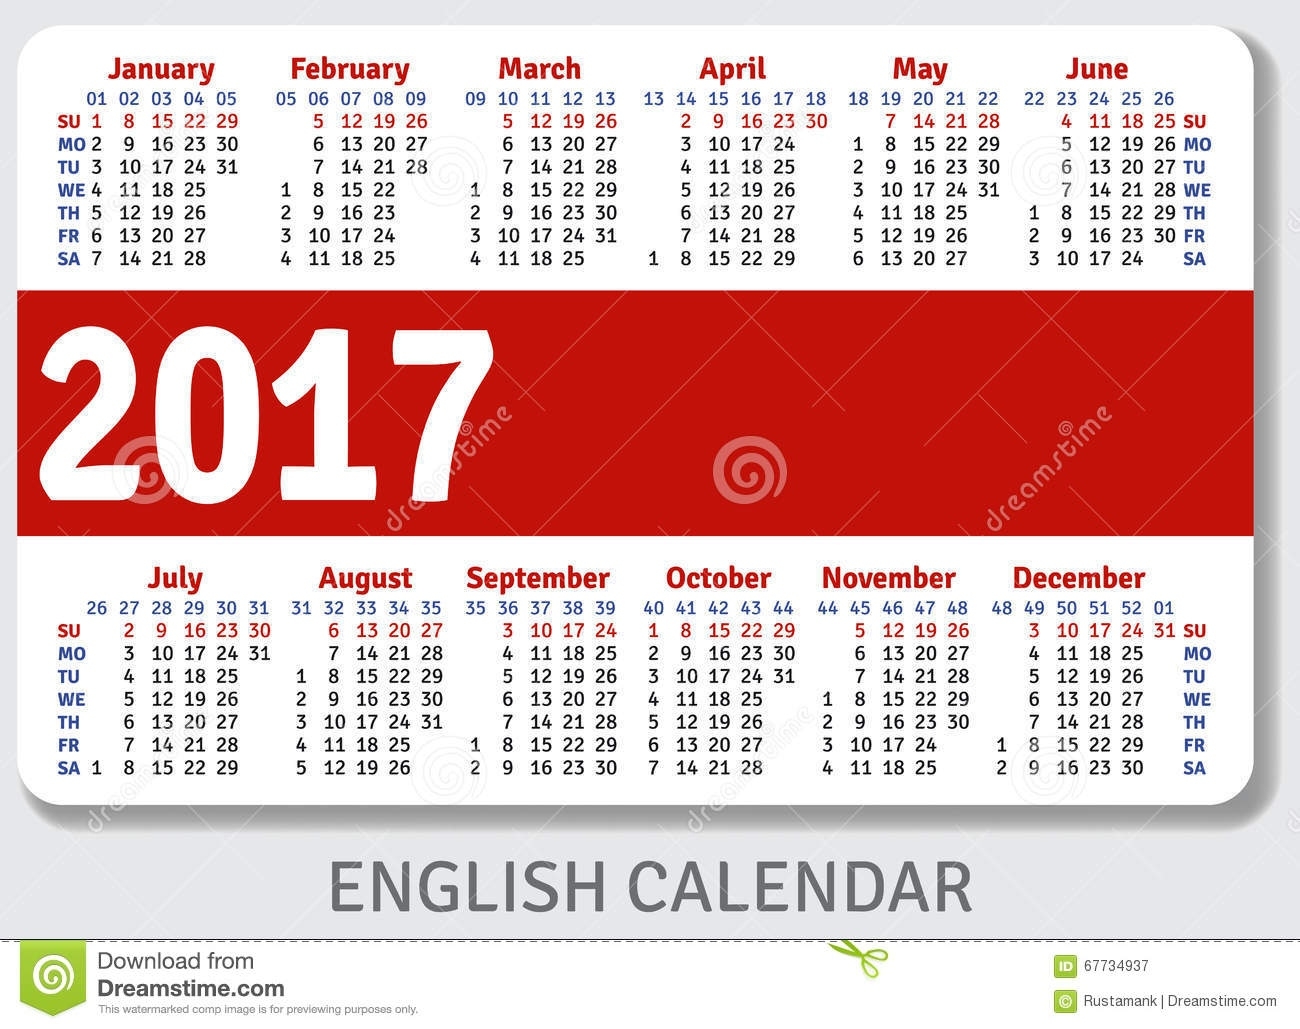 Calendar Template December 2017 Pocket 0 Calendars With Pockets Monthly Calendar With Pockets